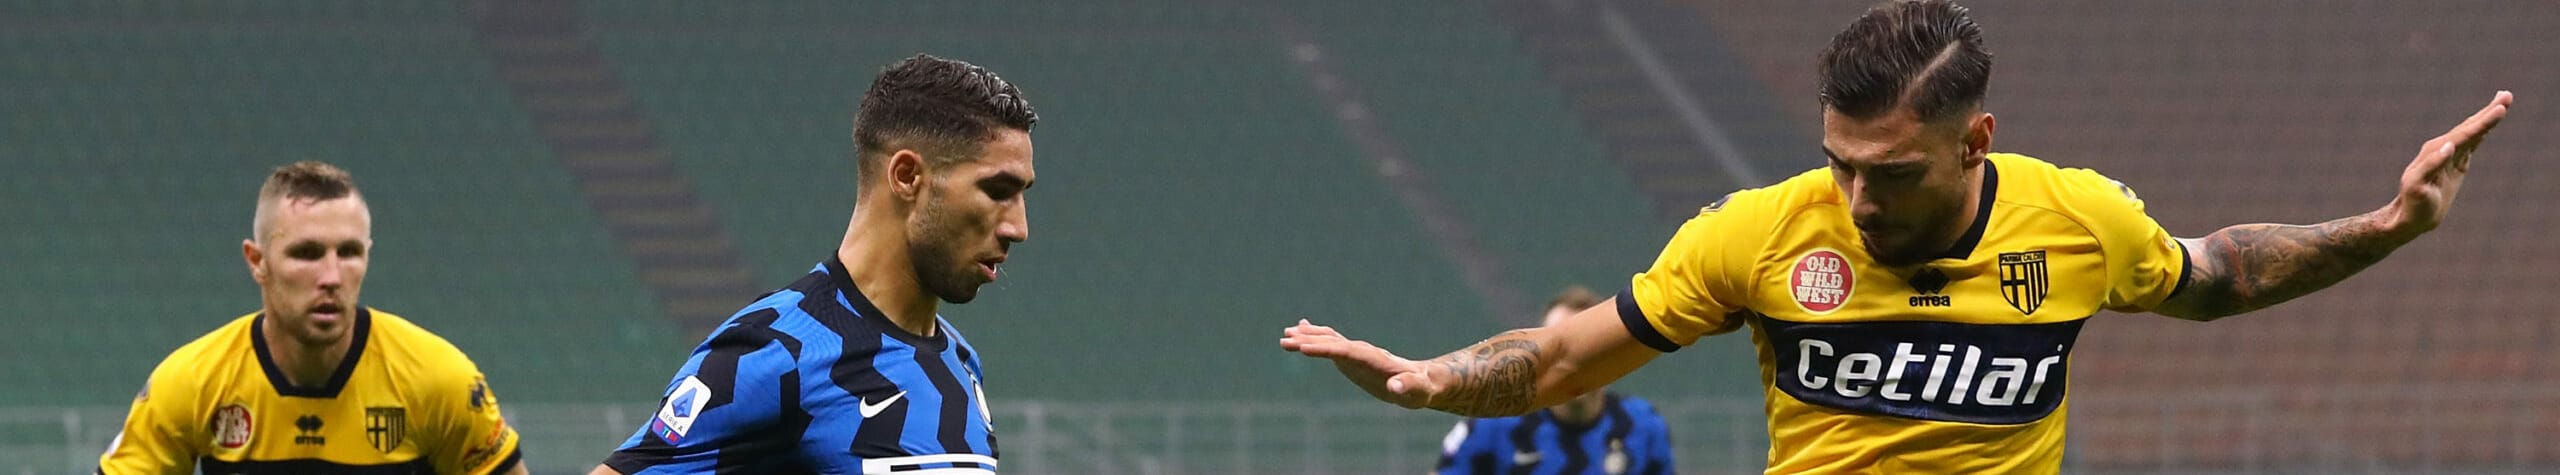 Parma-Inter: i ducali hanno bisogno di punti, ma Conte non vuol perdere il ritmo